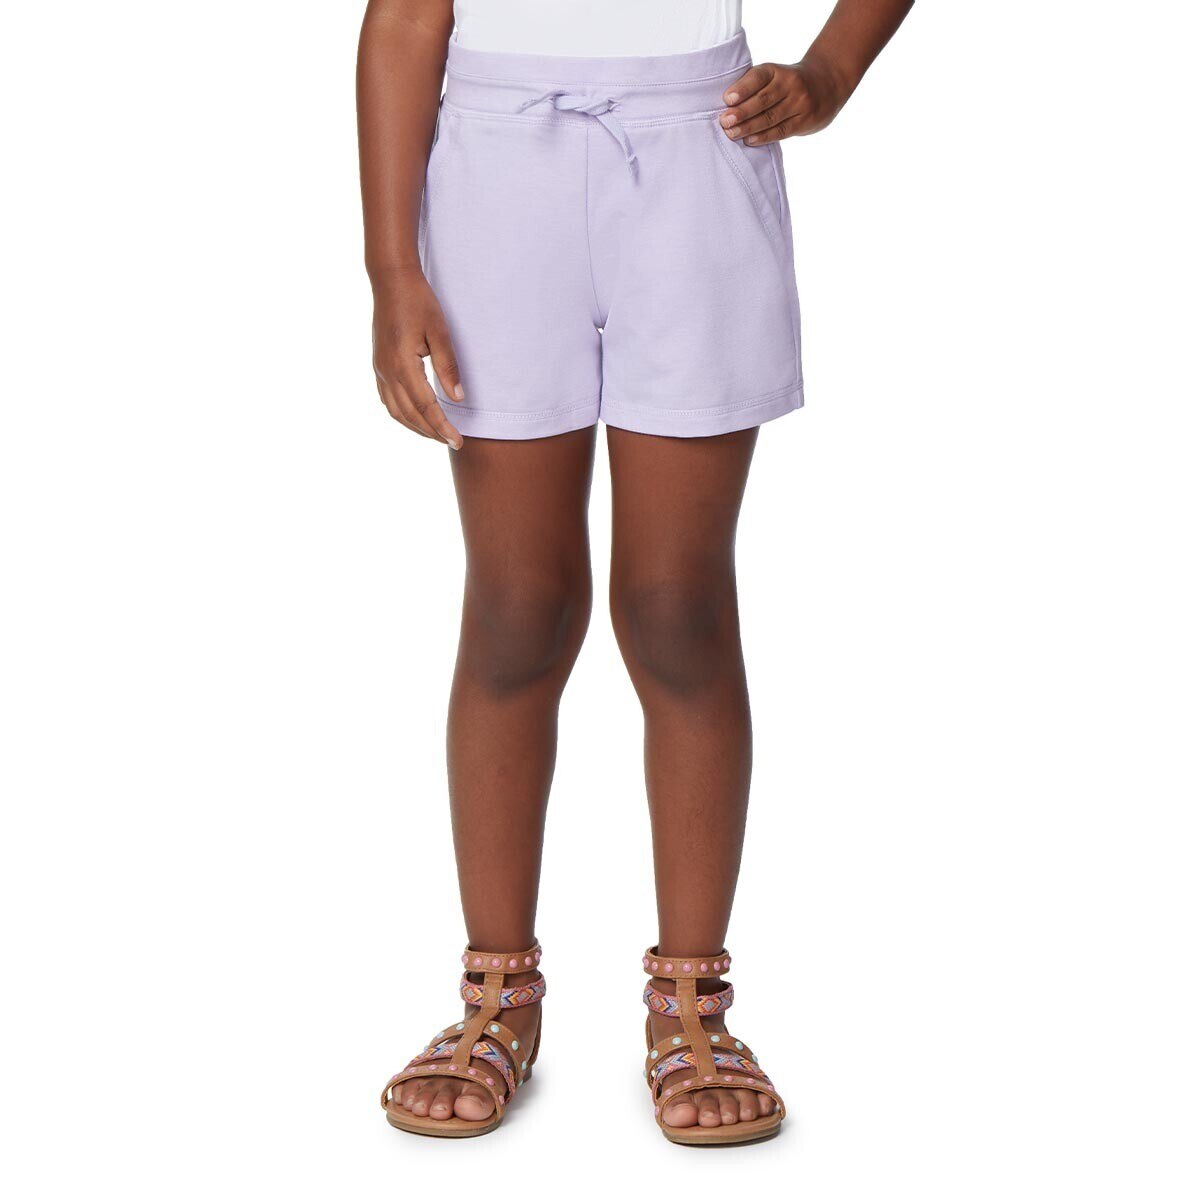 32 Degrees 兒童短褲 2件組 紫色組 XS